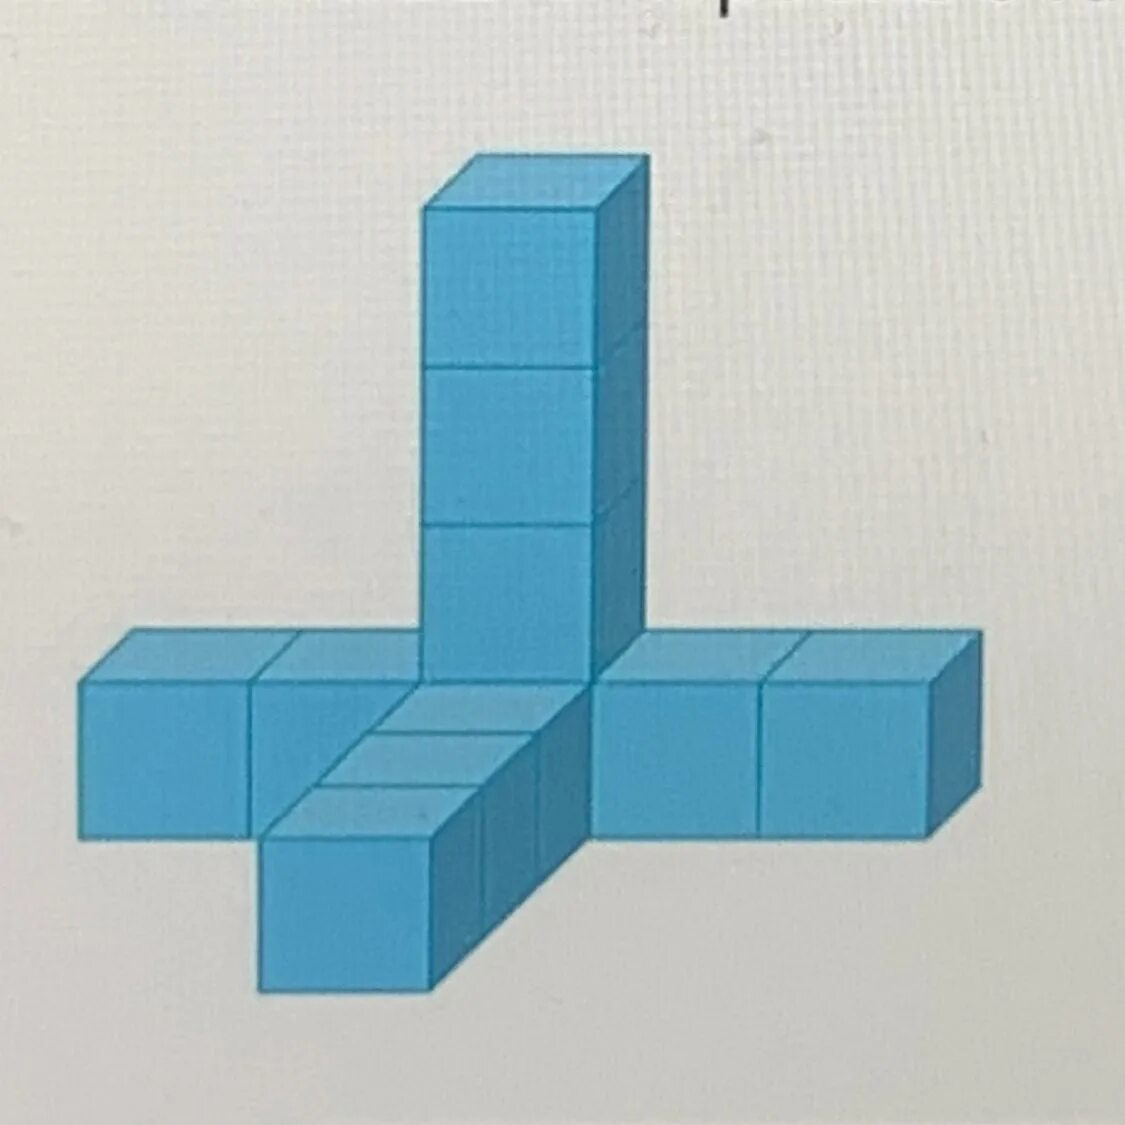 Из одинаковых кубиков изобразили стороны коробки